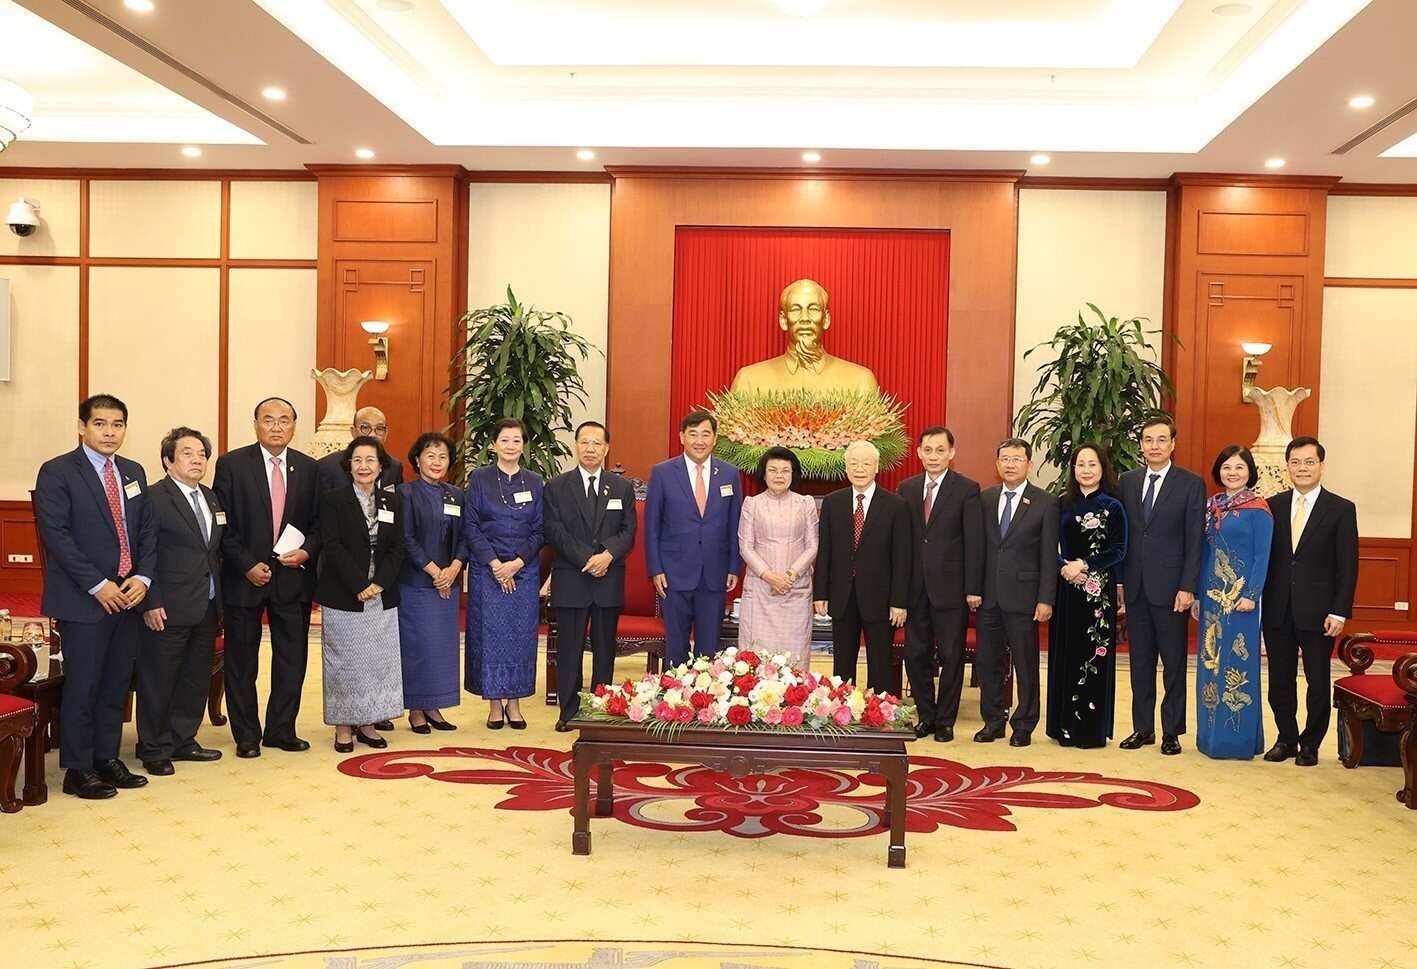 Tổng Bí thư Nguyễn Phú Trọng hoan nghênh, đánh giá cao ý nghĩa chuyến thăm của Chủ tịch Quốc hội Campuchia Khuon Sudary góp phần củng cố và tạo dấu ấn mới trong quan hệ Việt Nam - Campuchia. Ảnh: TTXVN